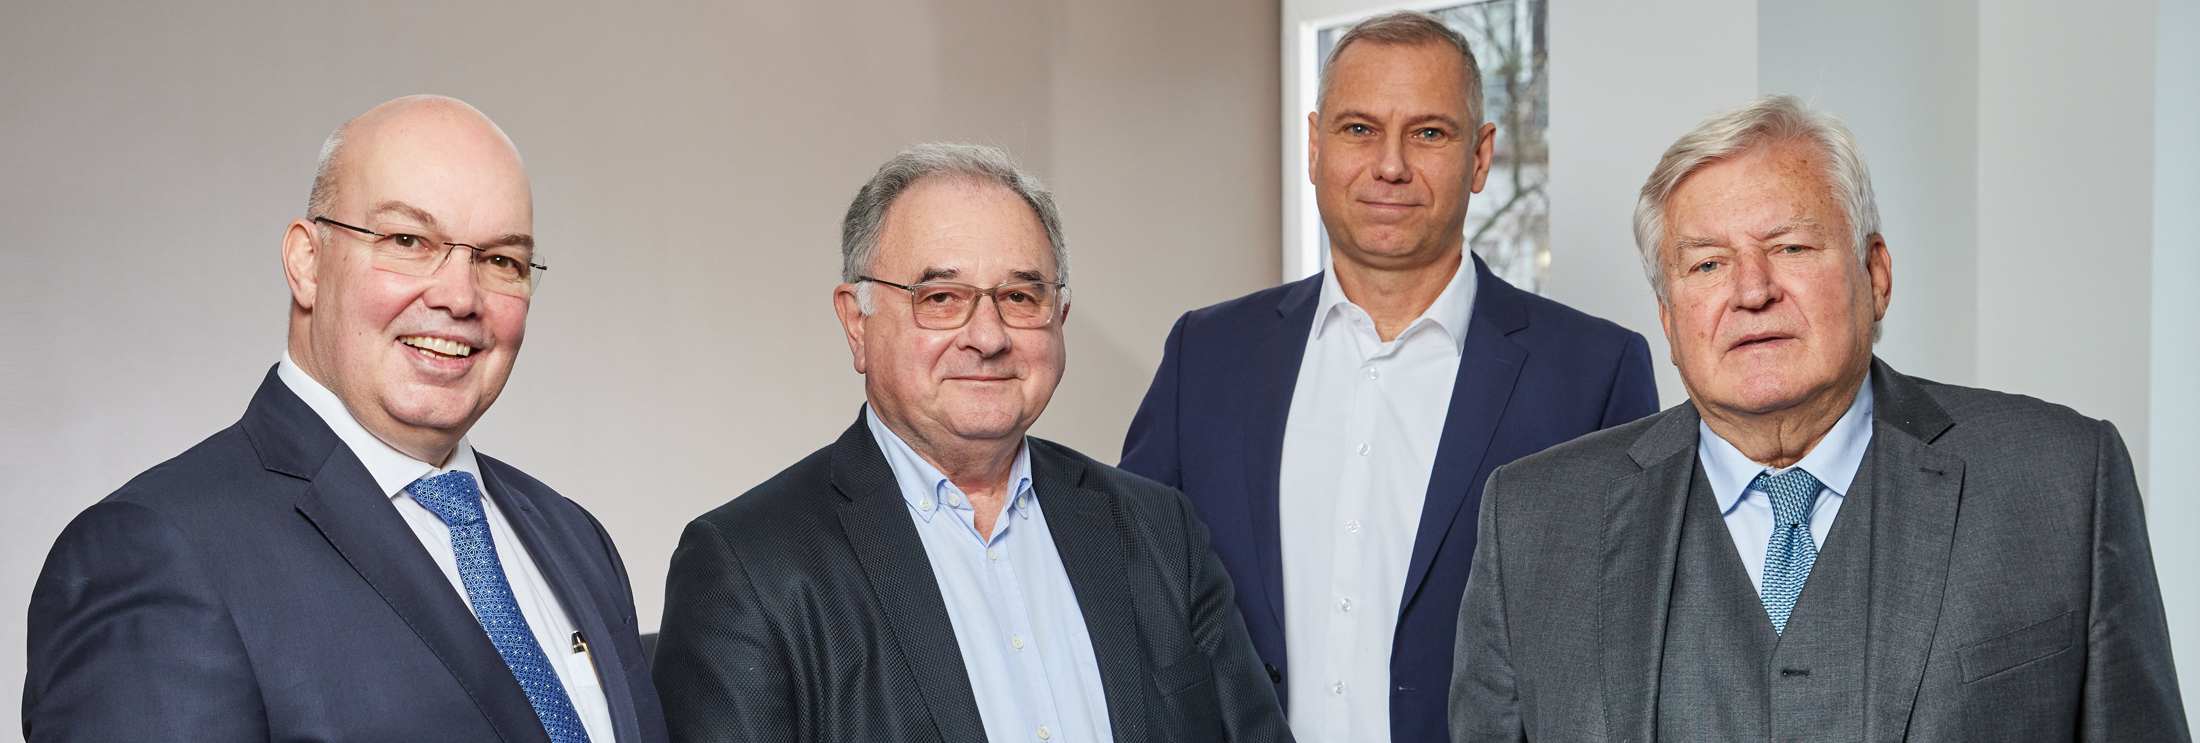 Kanzlei in Hannover: Rechtsanwälte und Notare Dr. Böse & Partner